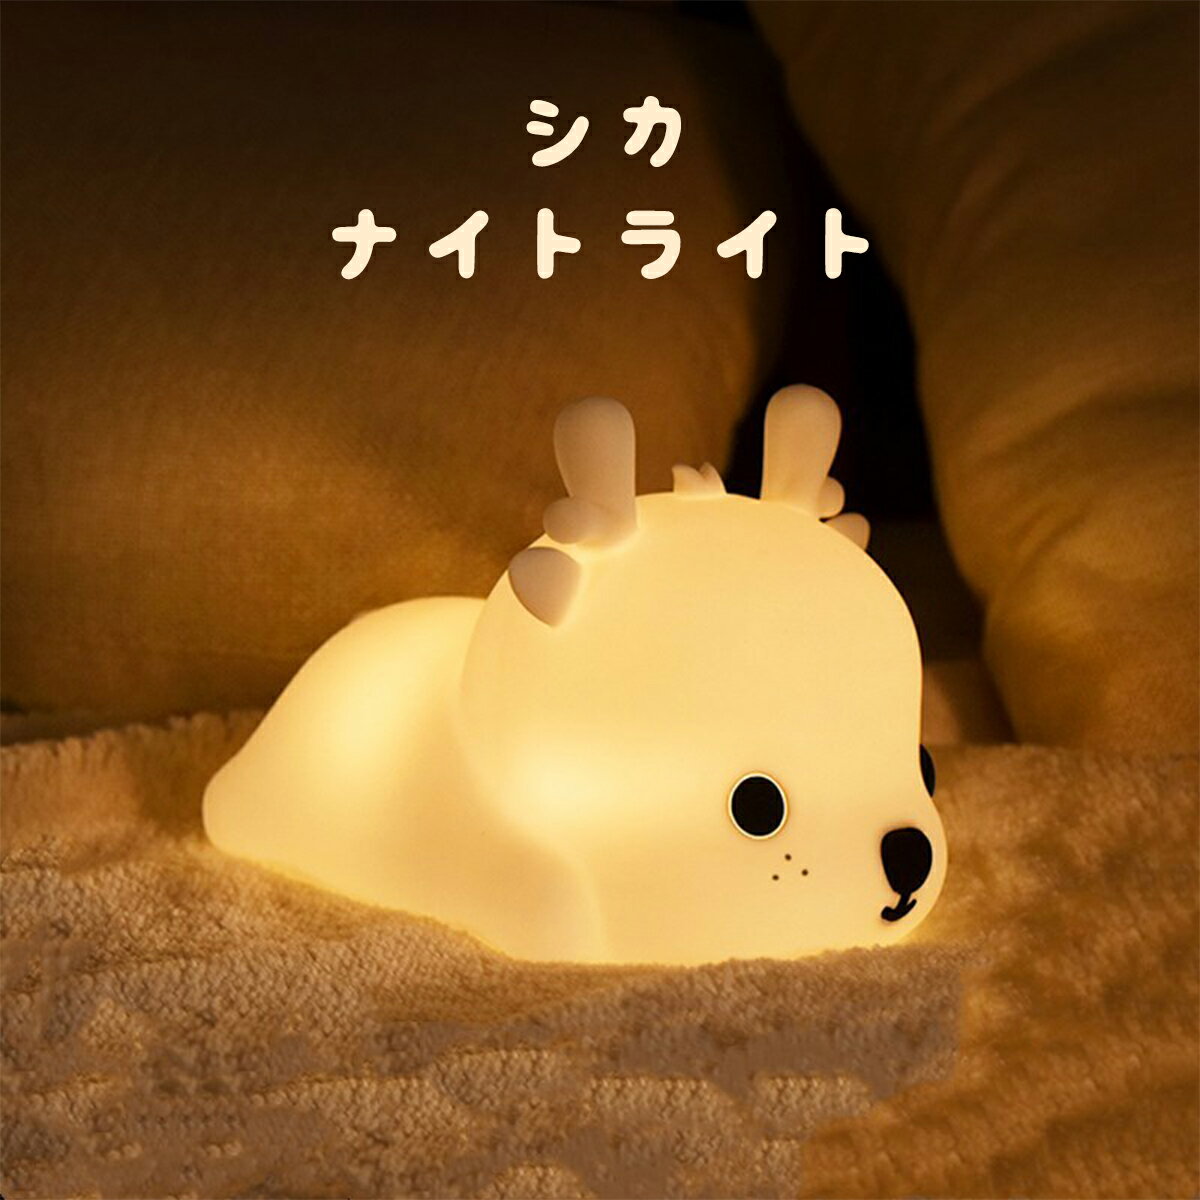 タッチ式 シカ ライト ナイトライト ルームライト 授乳ライト かわいい 子供部屋 寝室 電気 LED 間接照明 赤ちゃん 動物 鹿